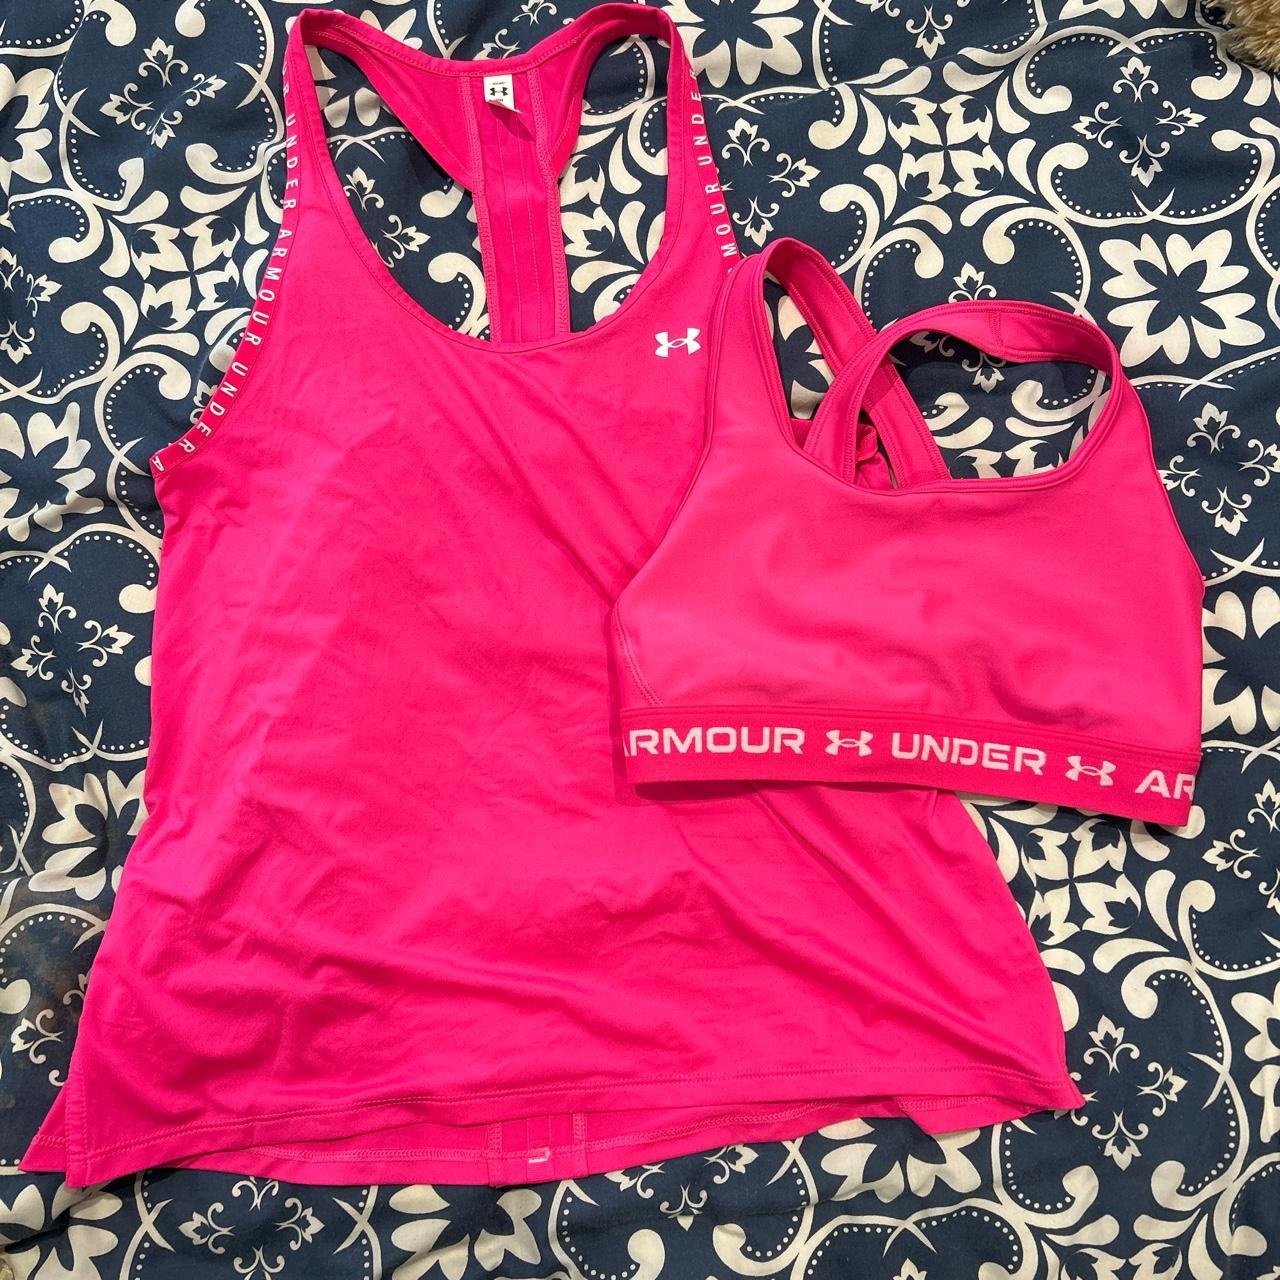 Under Armour Women's Pink T-shirt | Depop